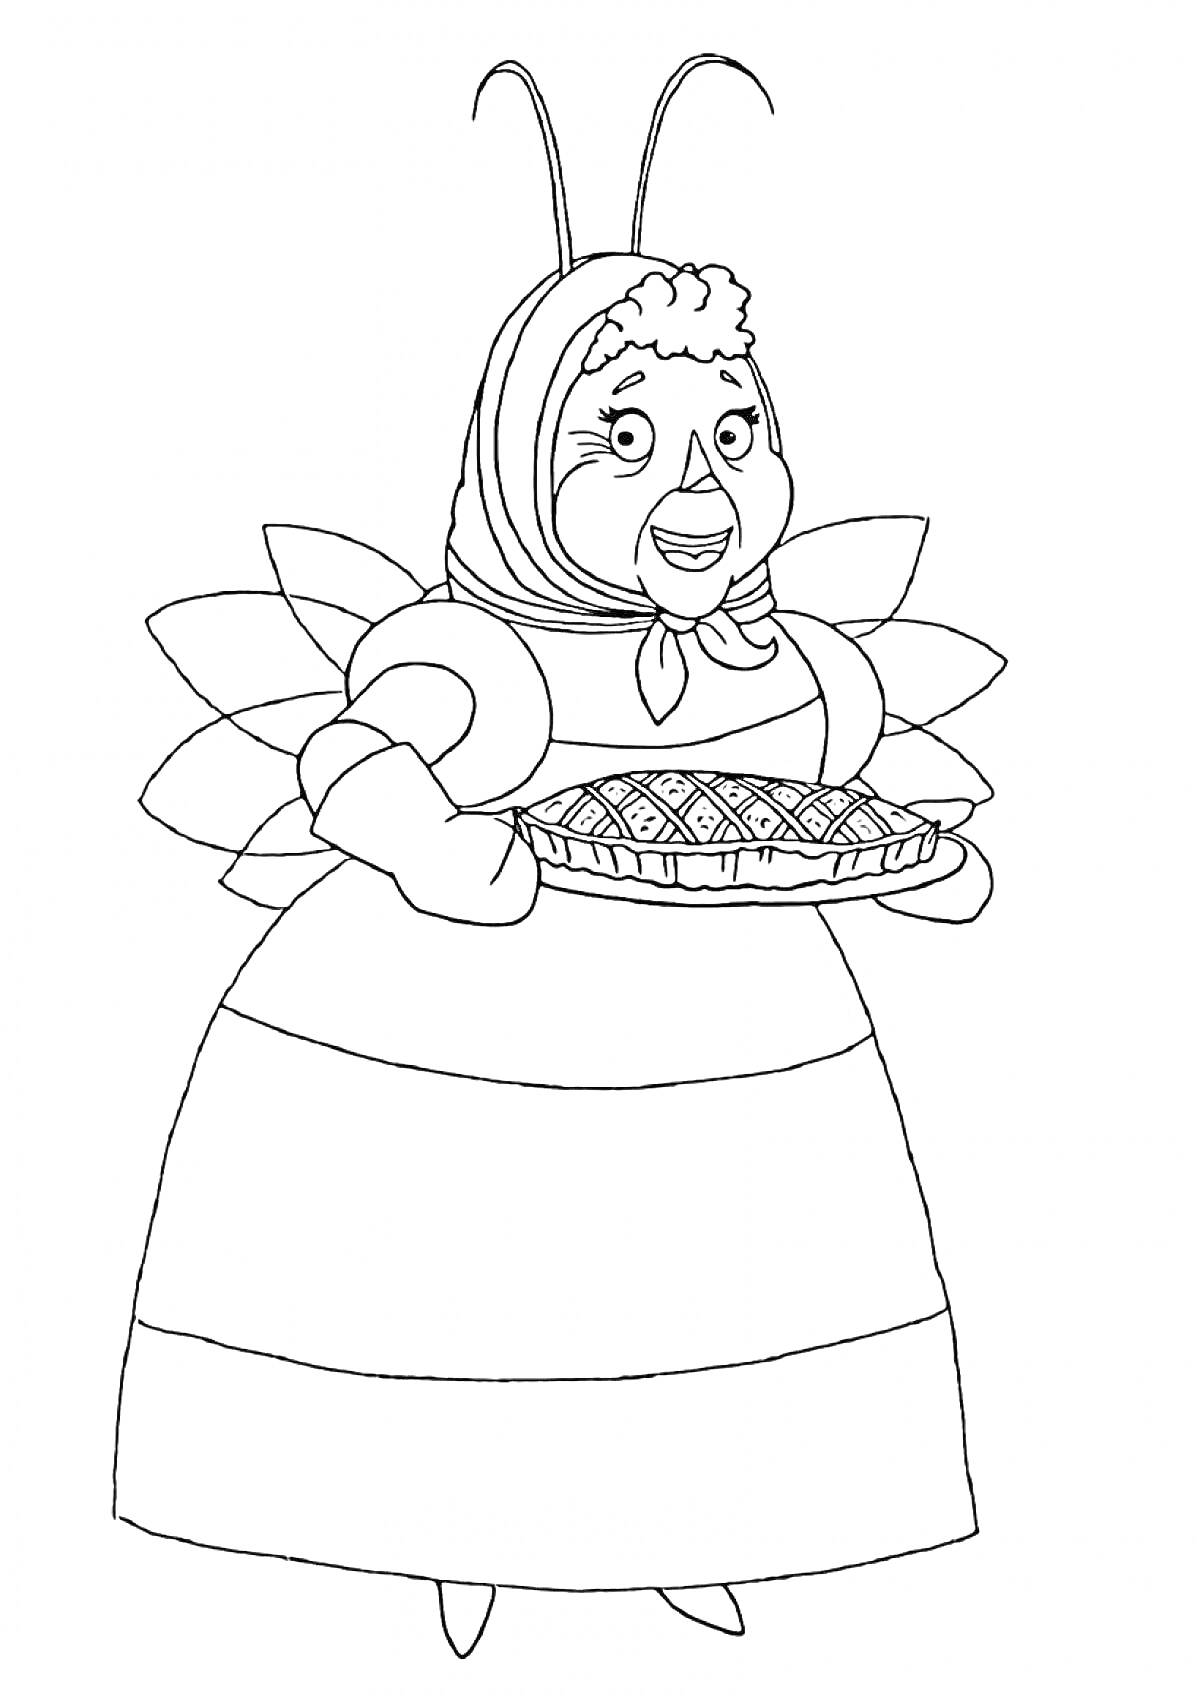 Раскраска Баба Капа с пирогом на руках